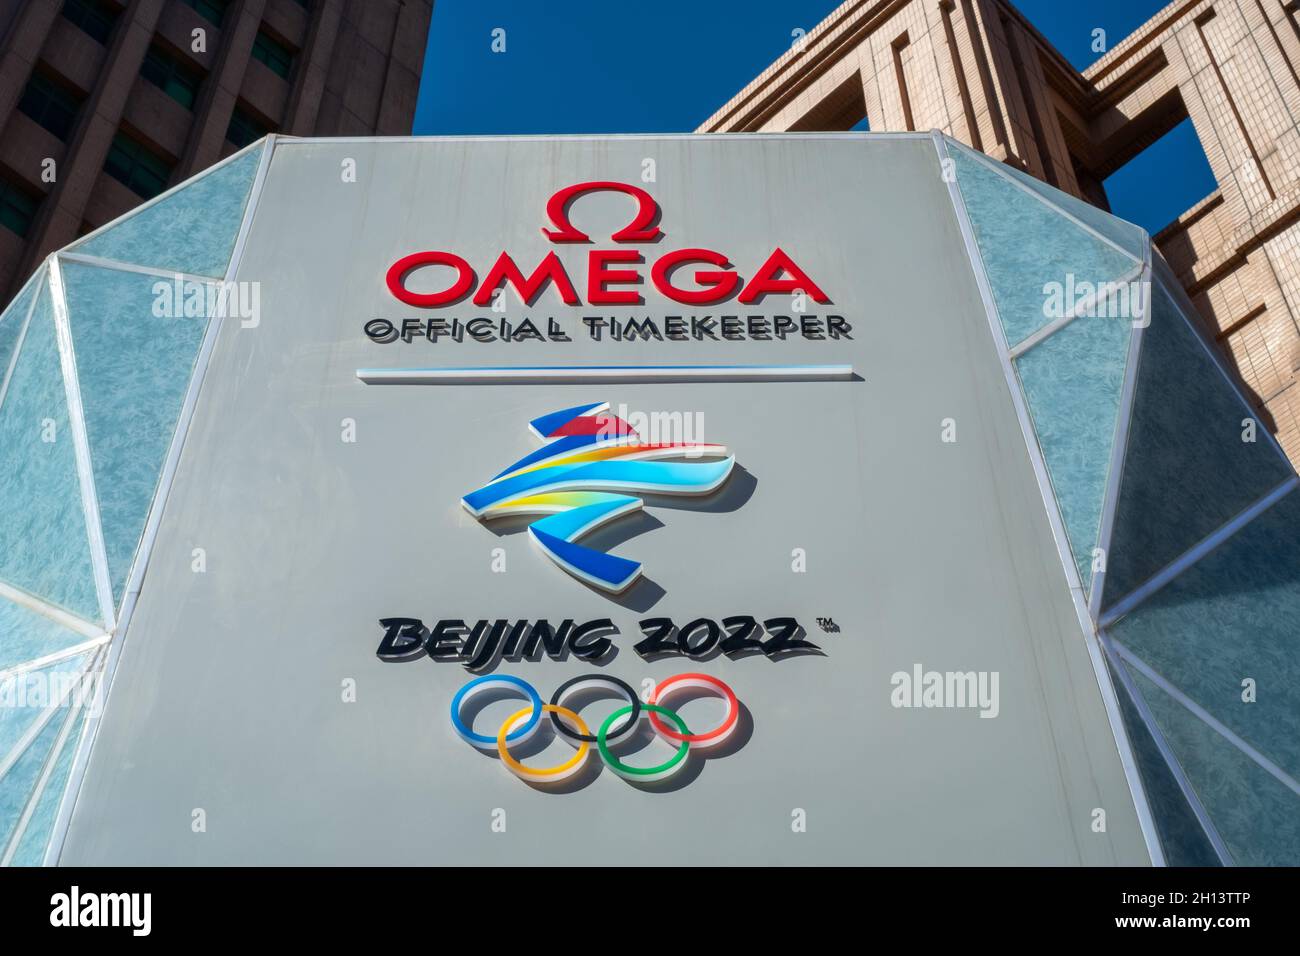 Die Countdown-Uhr für die Olympischen Winterspiele Peking 2022 in Peking, China. 16-Okt-2021 Stockfoto